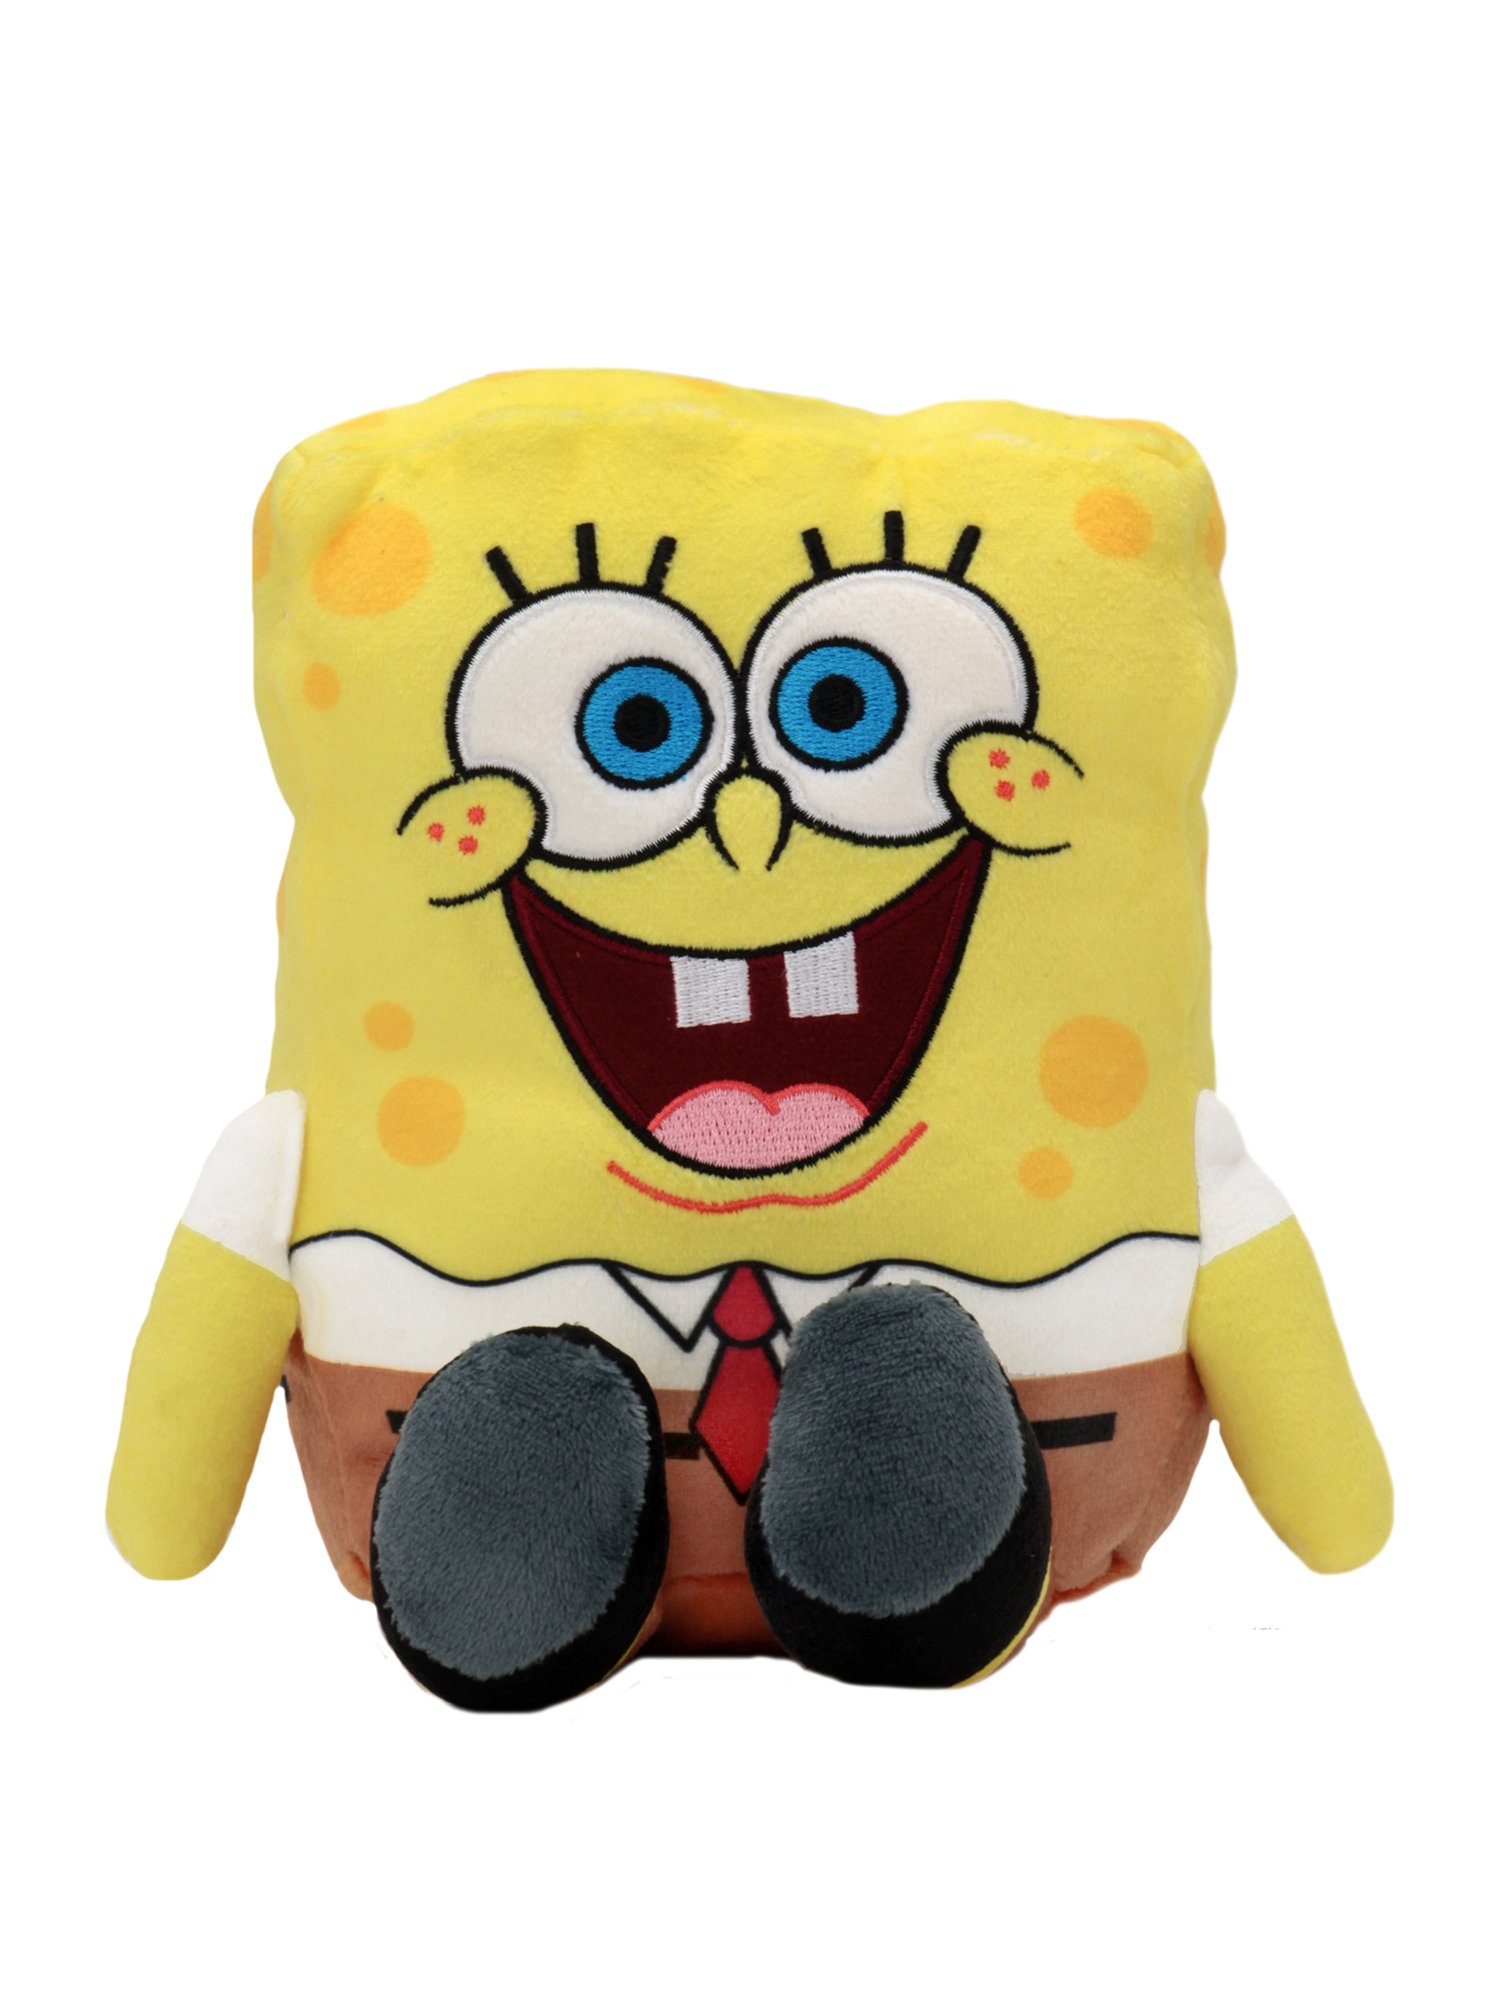 Kidrobot - Plush Phunny - Spongebob (KR15606)